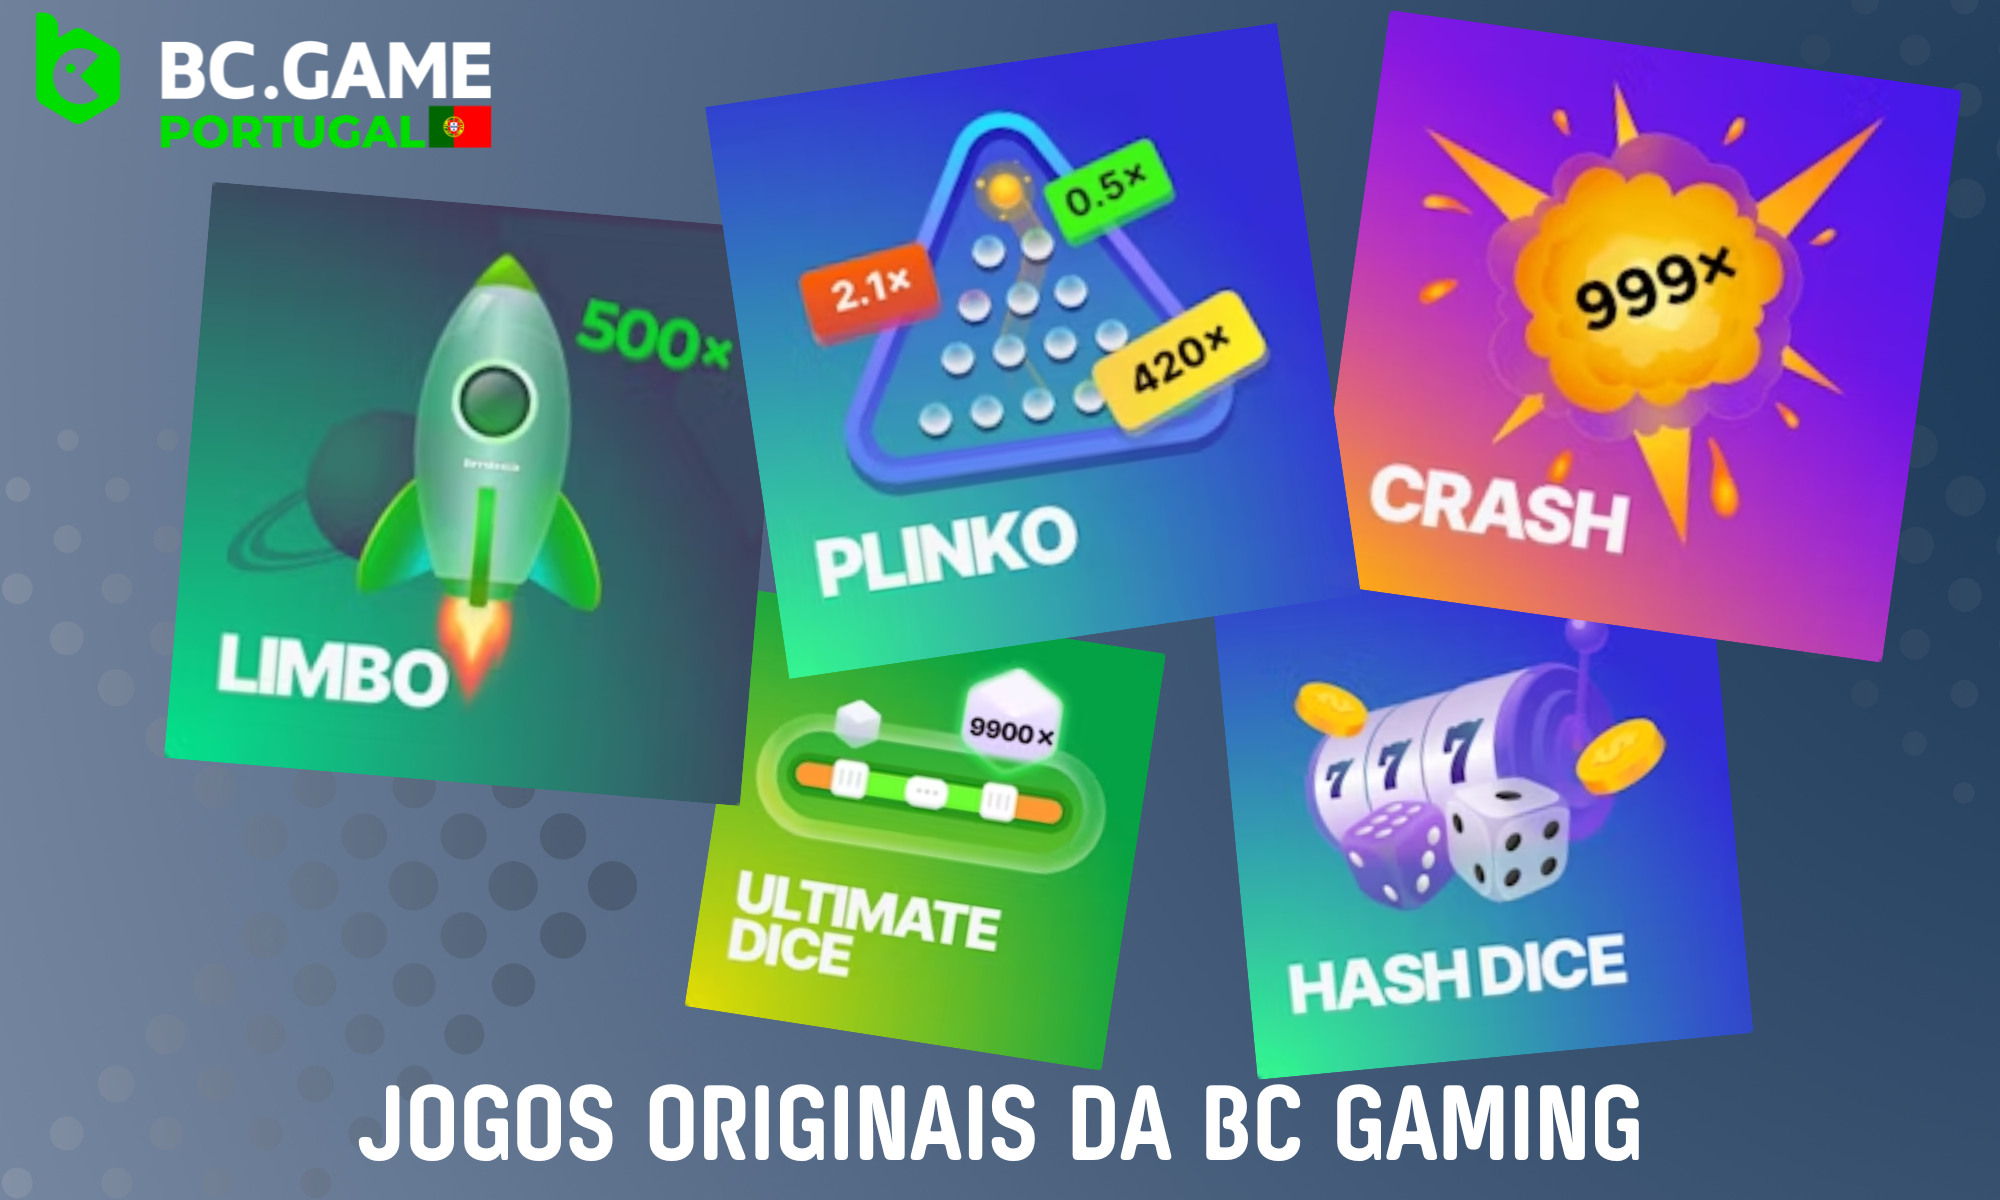 O BC Game tem uma secção separada chamada BC Originals, que contém jogos criados pelos próprios criadores do casino